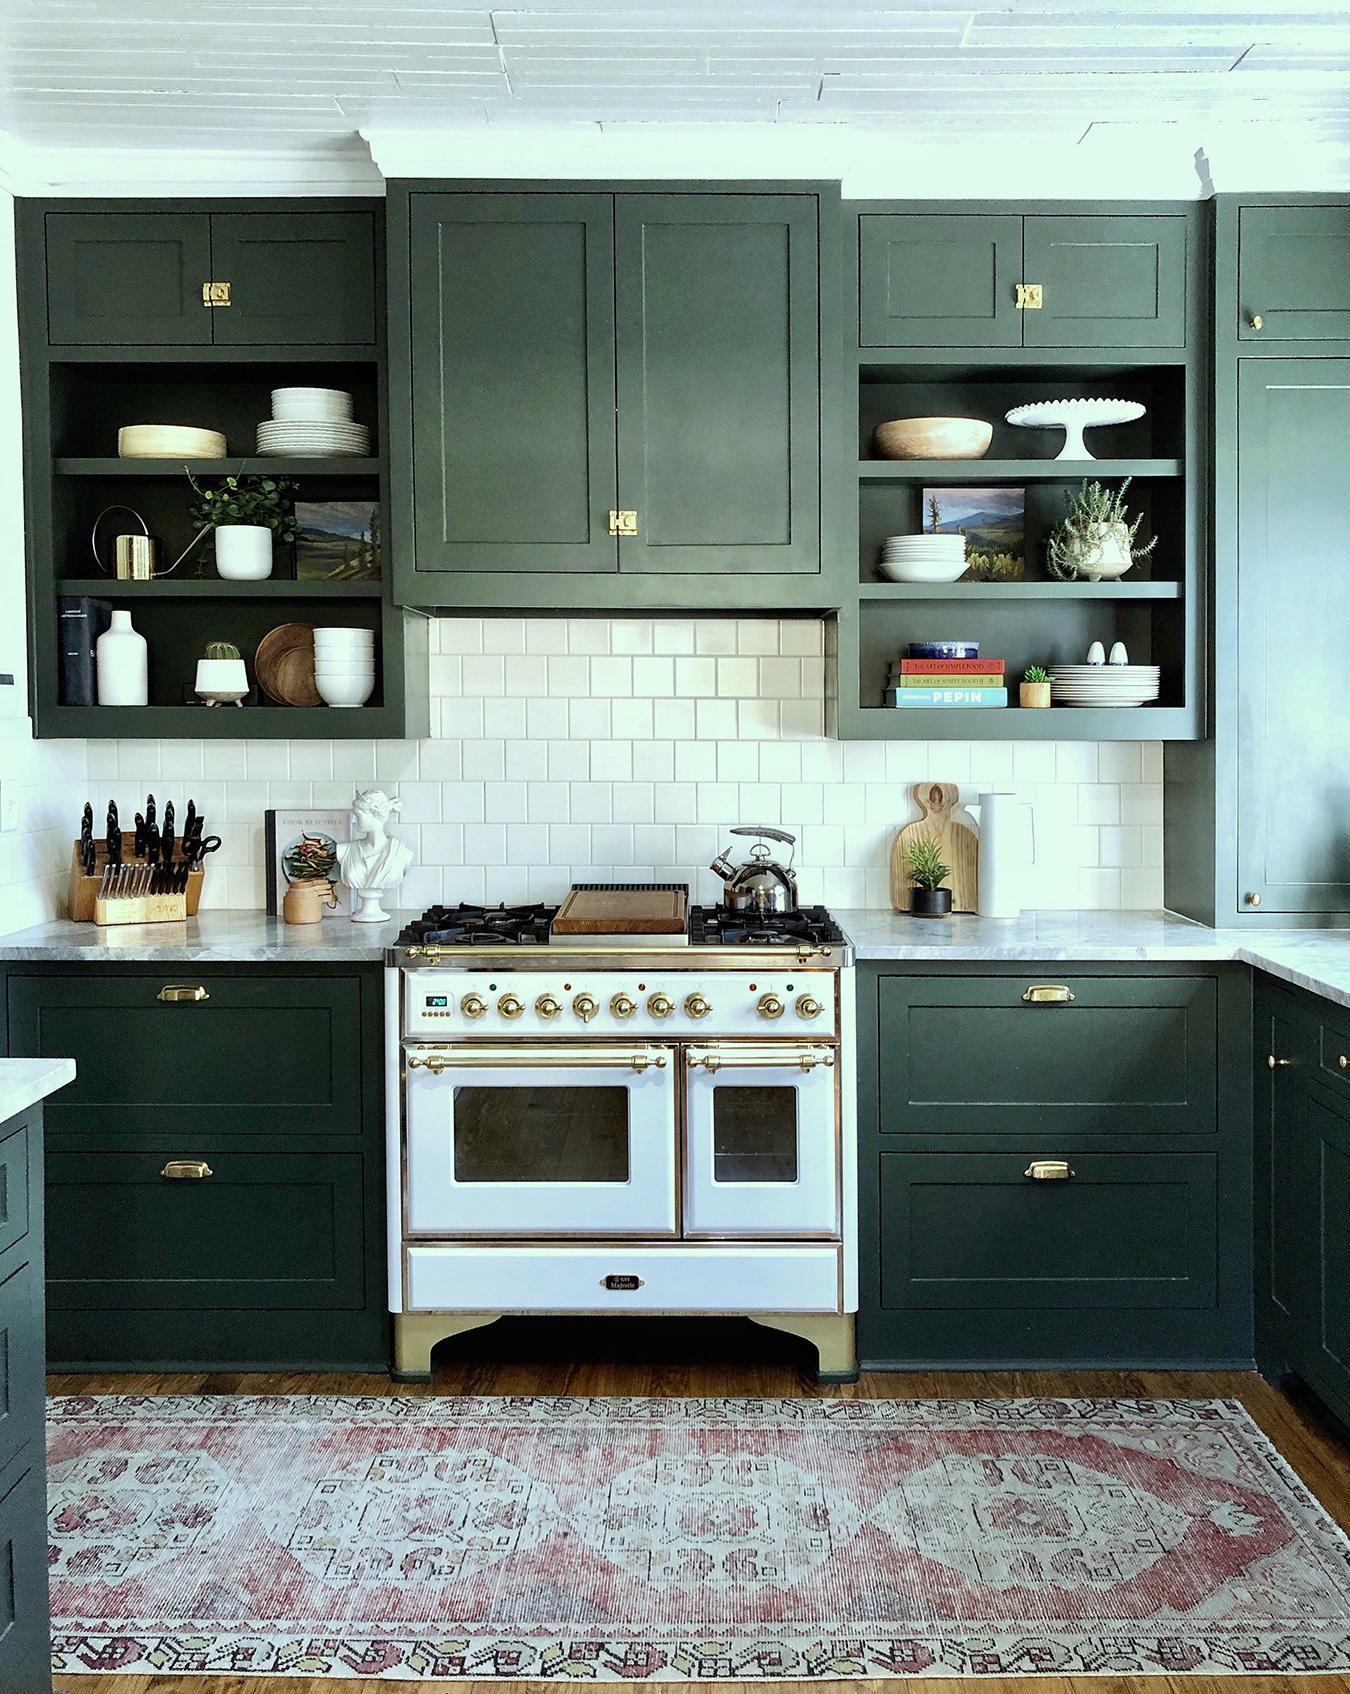 No-fail kitchen cabinet colors - Fairmont historic district kitchen - urbanology designs - no-fail kitchen cabinet colors